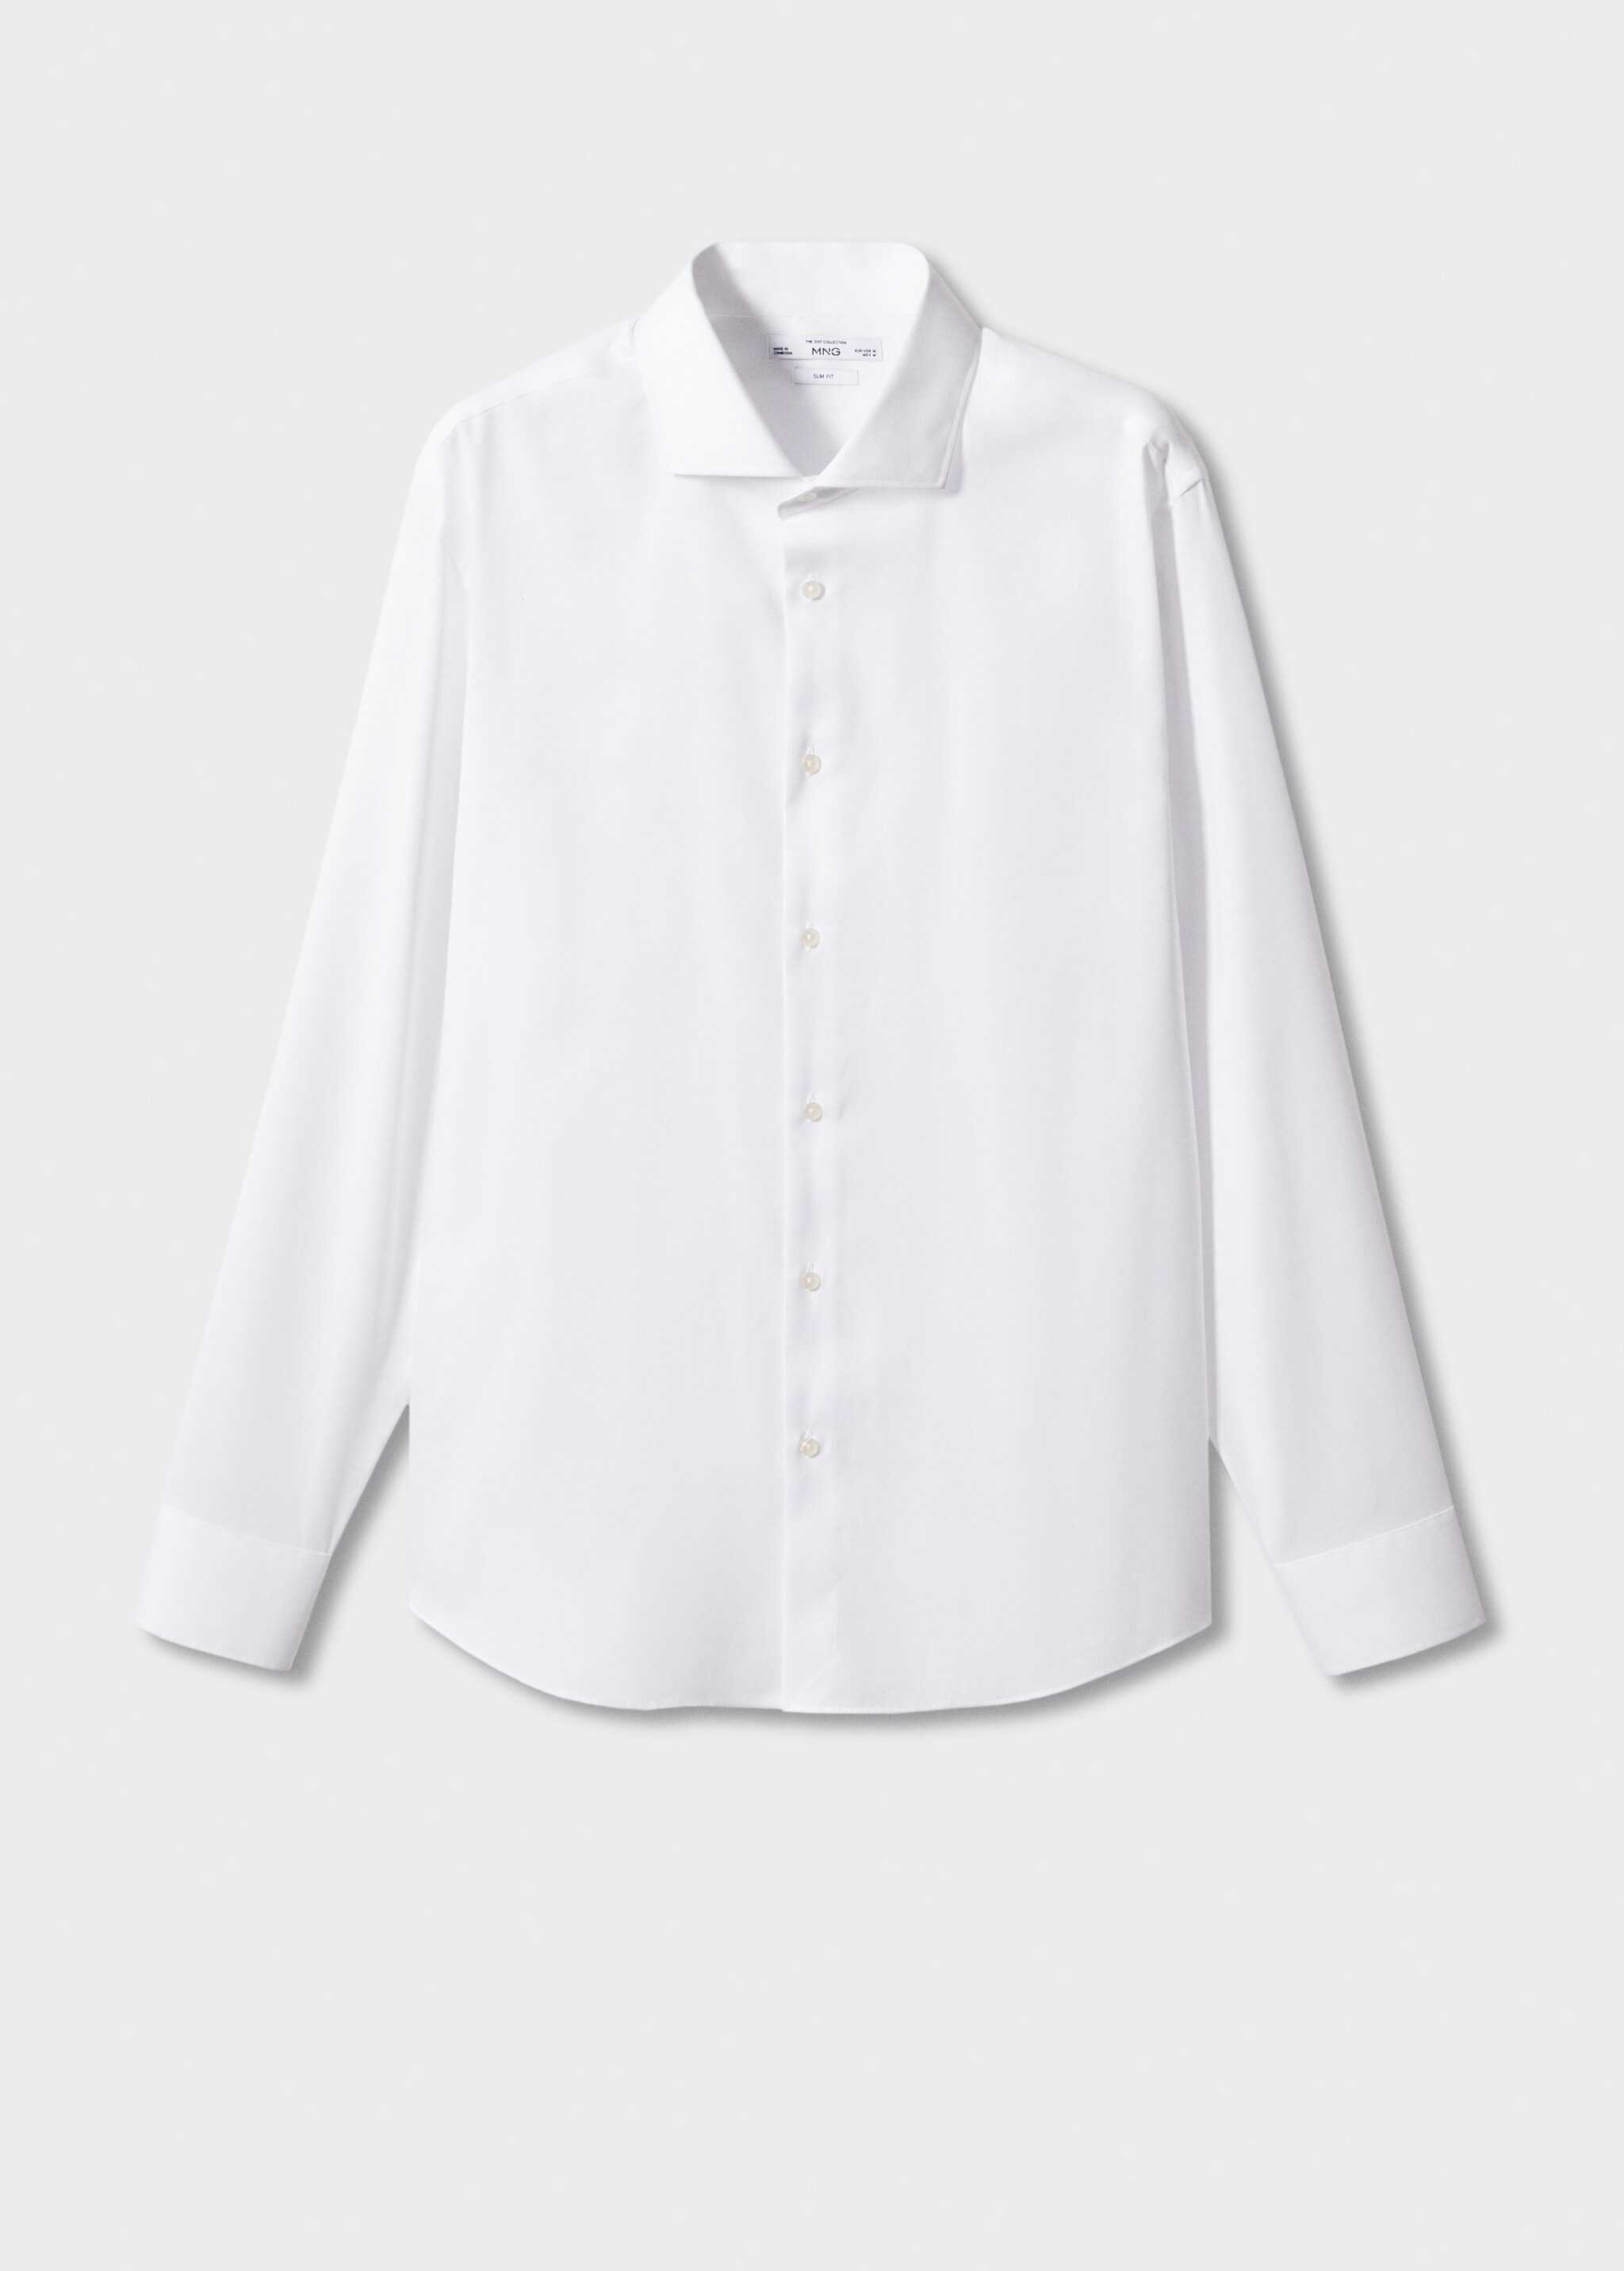 Camisa traje slim fit algodón estructura - Artículo sin modelo